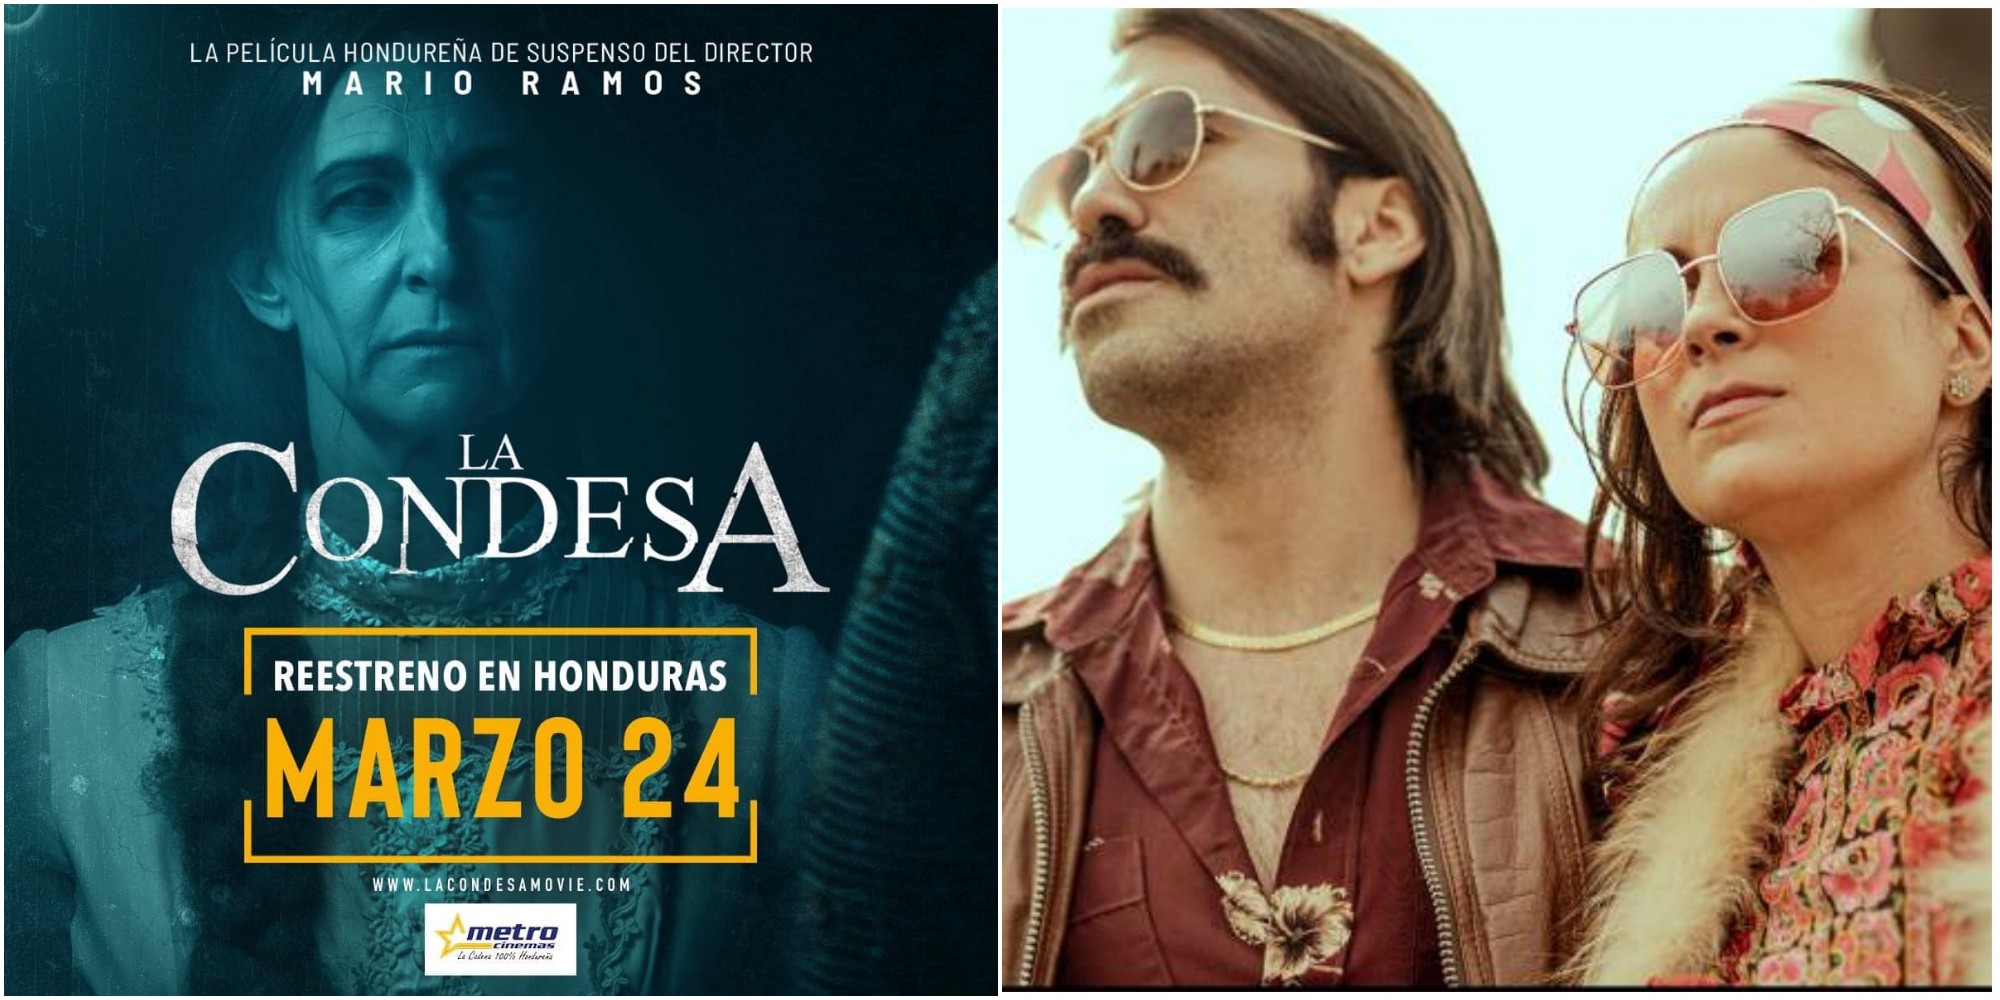 Película hondureña La Condesa se estrenará en marzo en Honduras